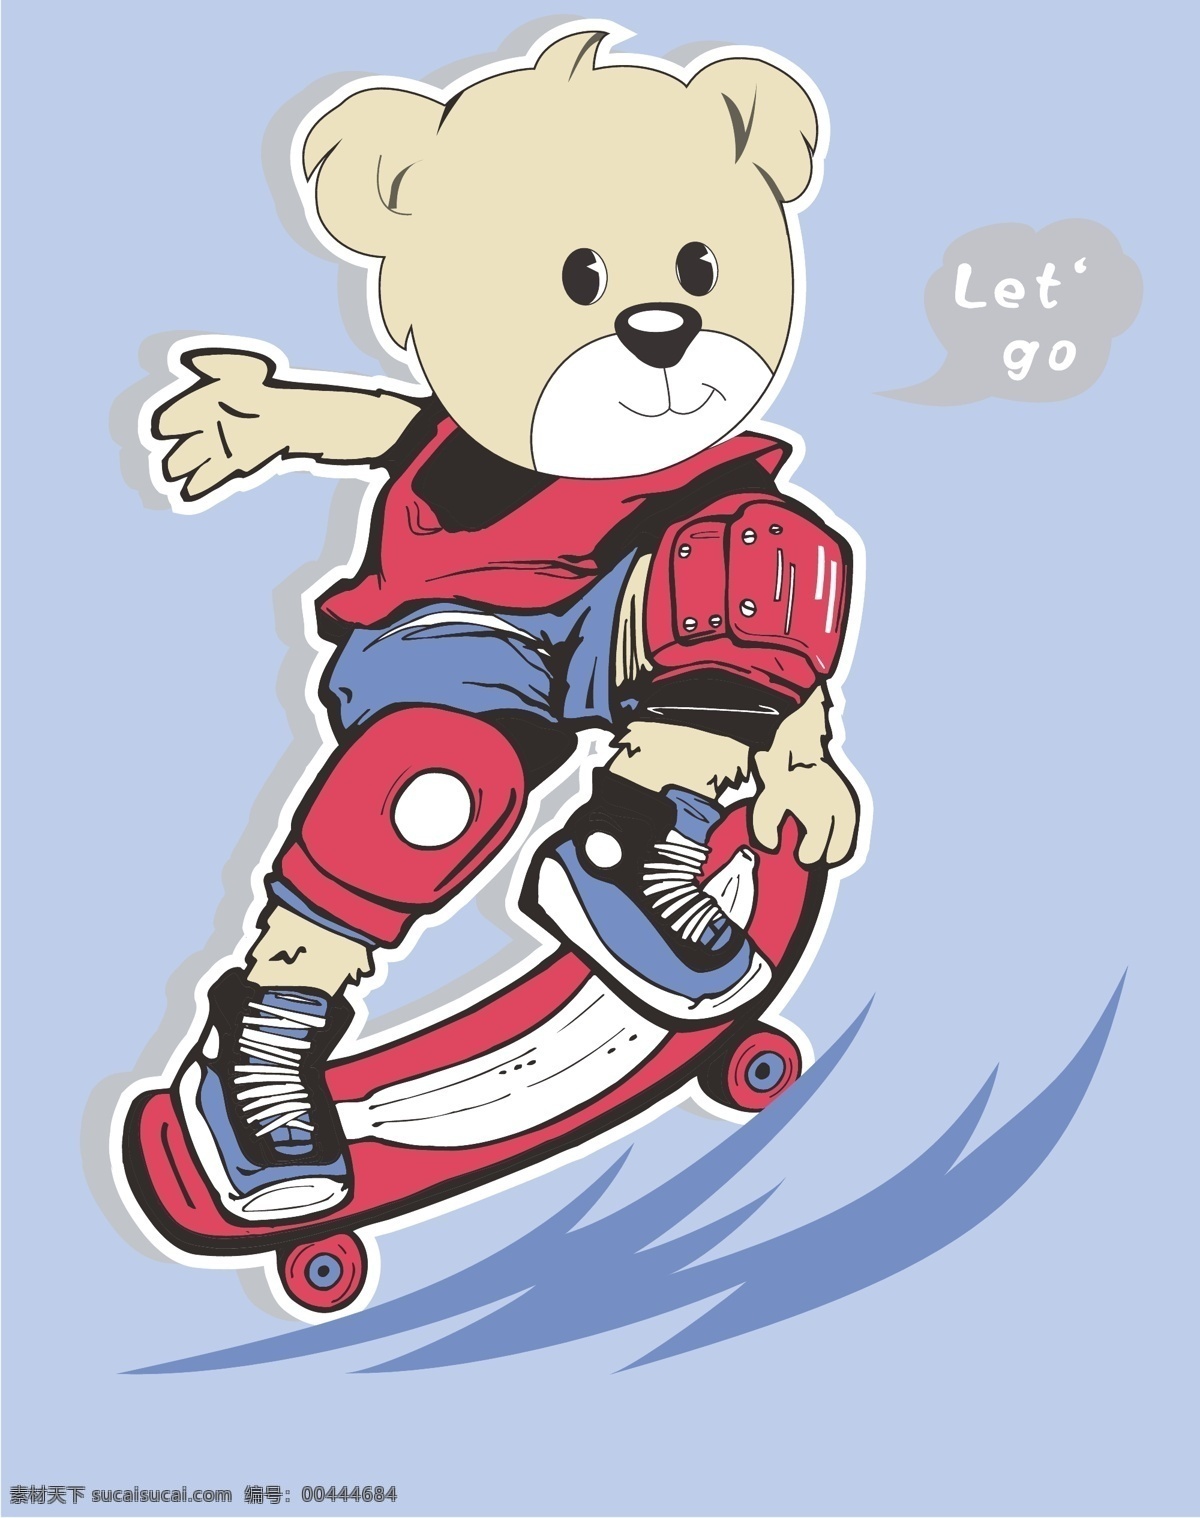 滑板 运动 滑板运动 极限运动 卡通设计 快乐生活 手绘插画 小熊 健康阳光 卡通图案形象 dd图案 矢量 插画集